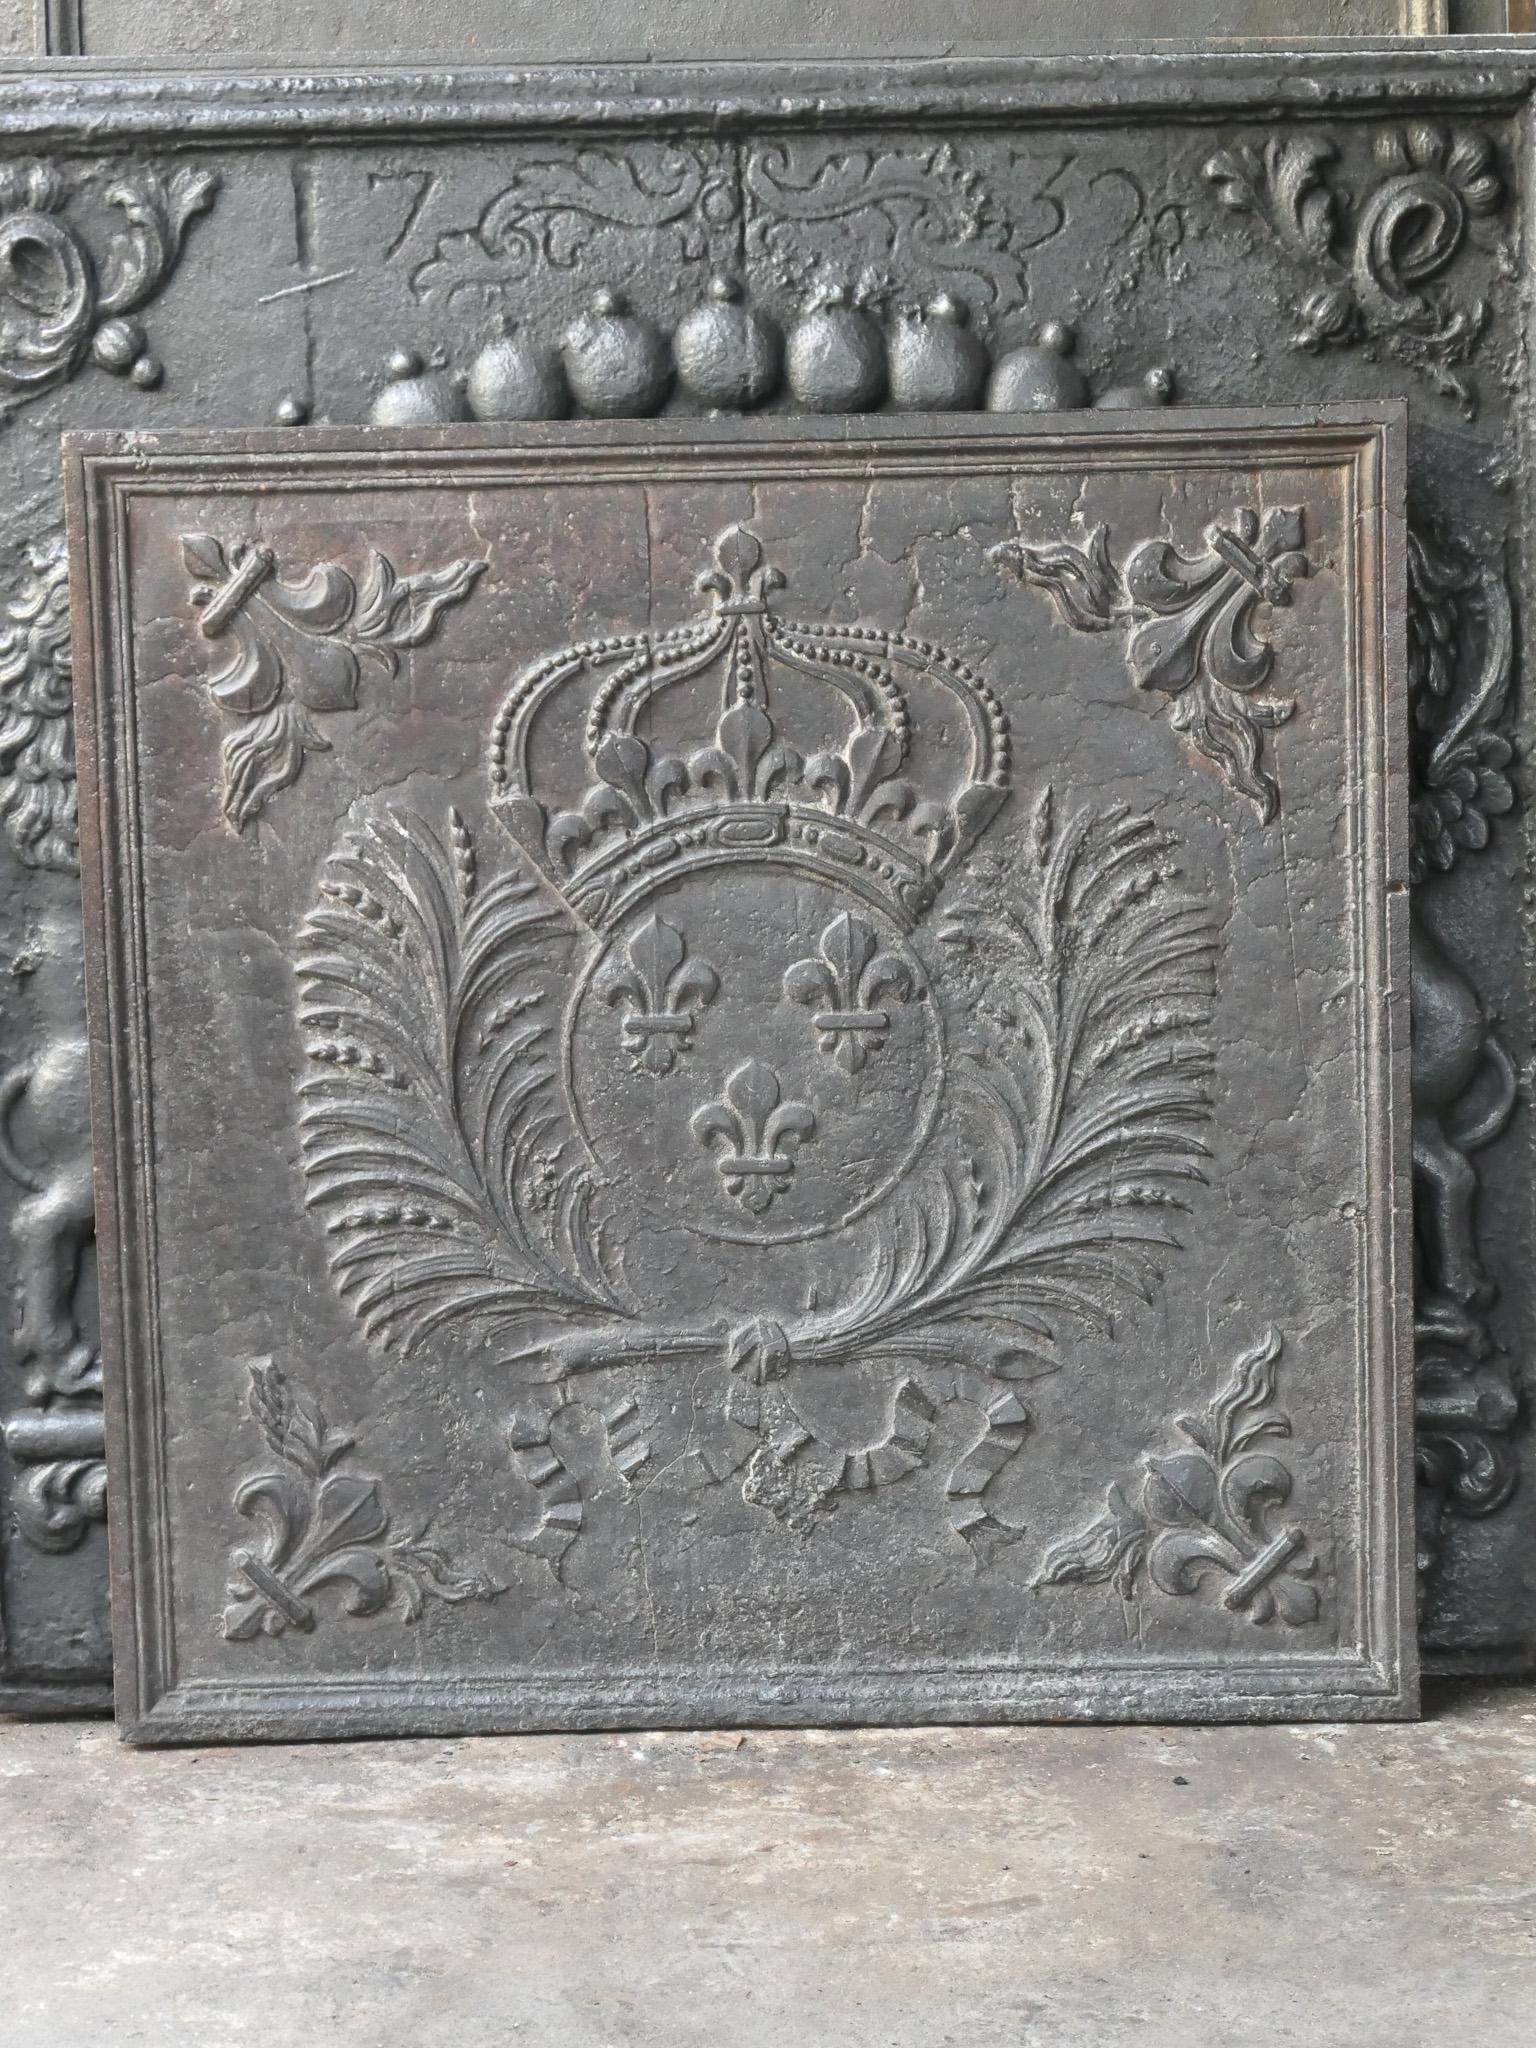 Plaque de cheminée française du 17e - 18e siècle d'époque Louis XIV avec les armoiries de la France, datée de 1705. Un blason de la Maison de Bourbon, une maison royale d'origine française qui est devenue une dynastie majeure en Europe. La maison a